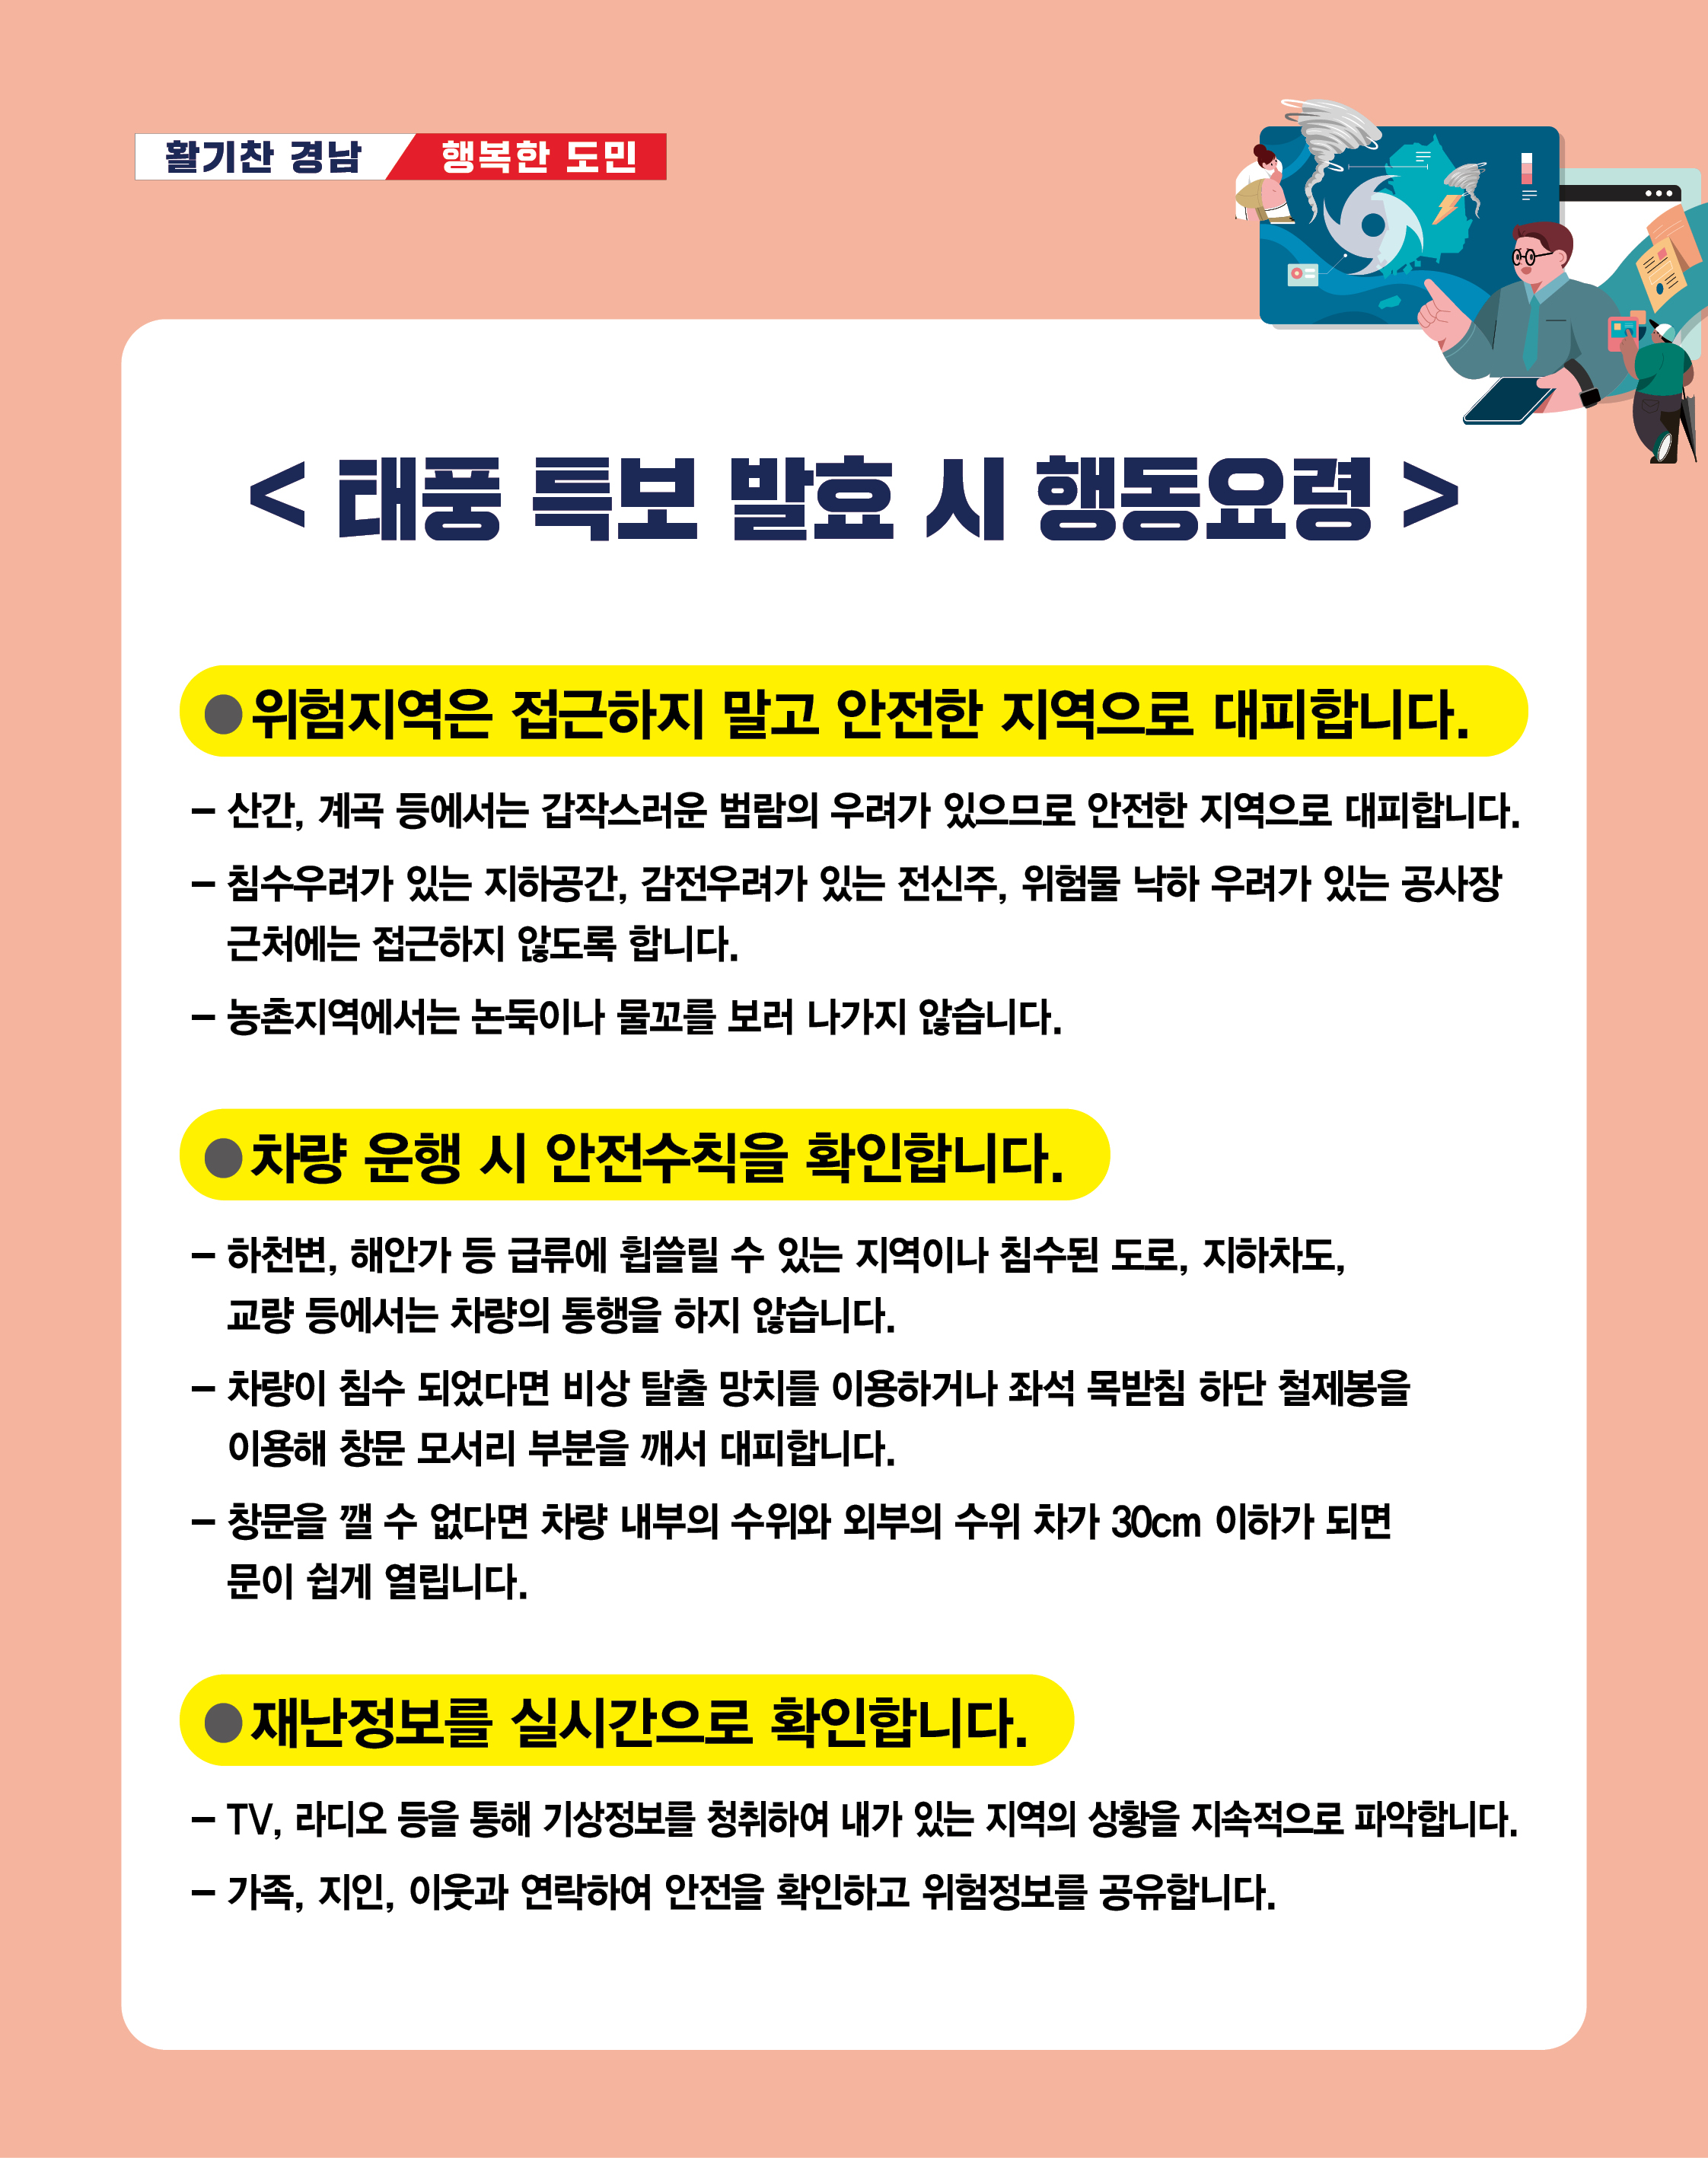 도청자연재난과태풍대비행동요령카드뉴스(dday)2.jpg